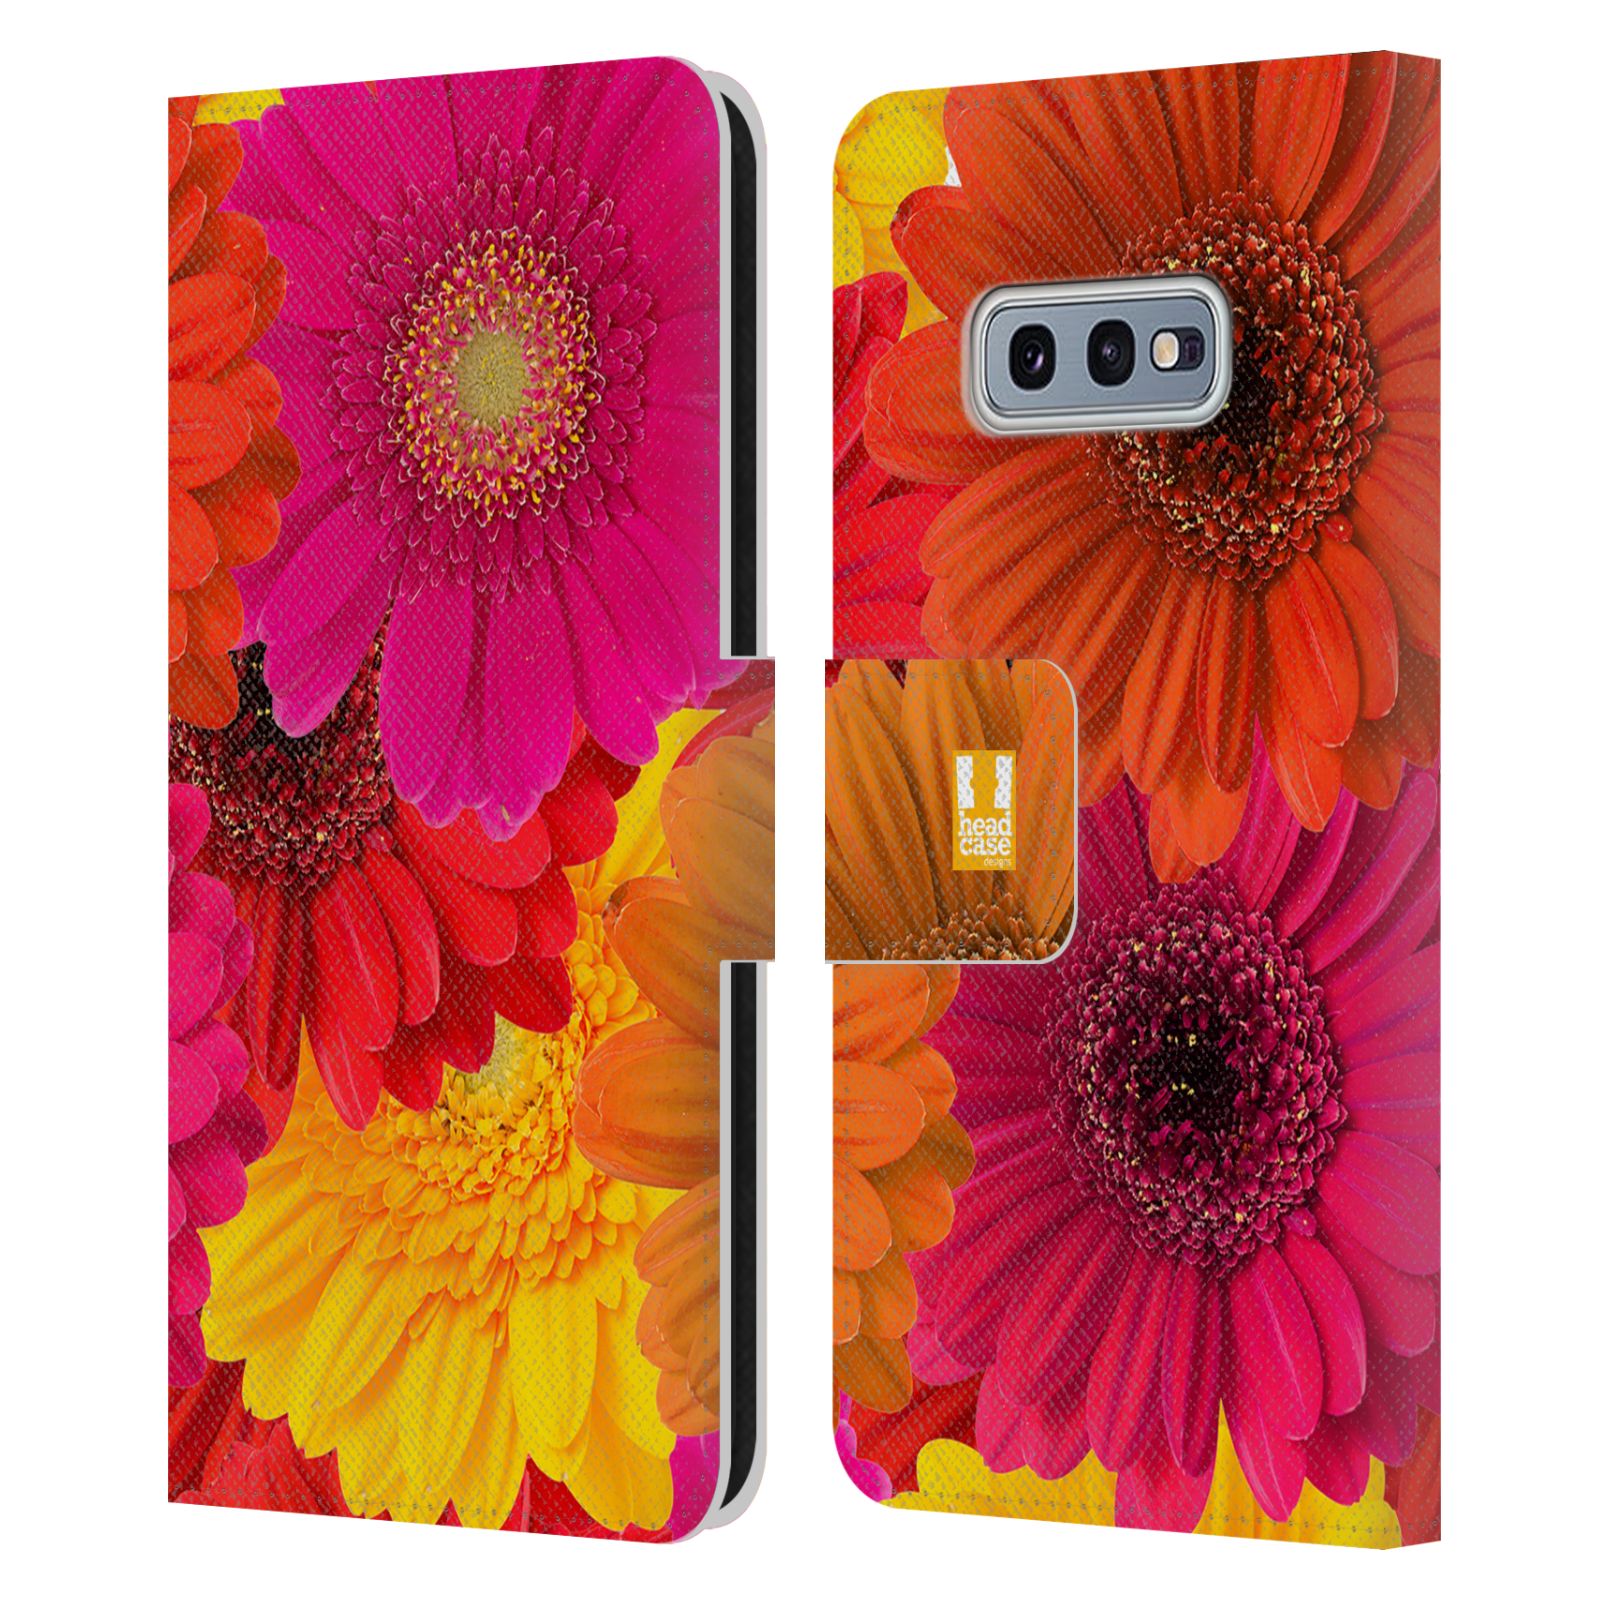 Pouzdro HEAD CASE na mobil Samsung Galaxy S10e květy foto fialová, oranžová GERBERA